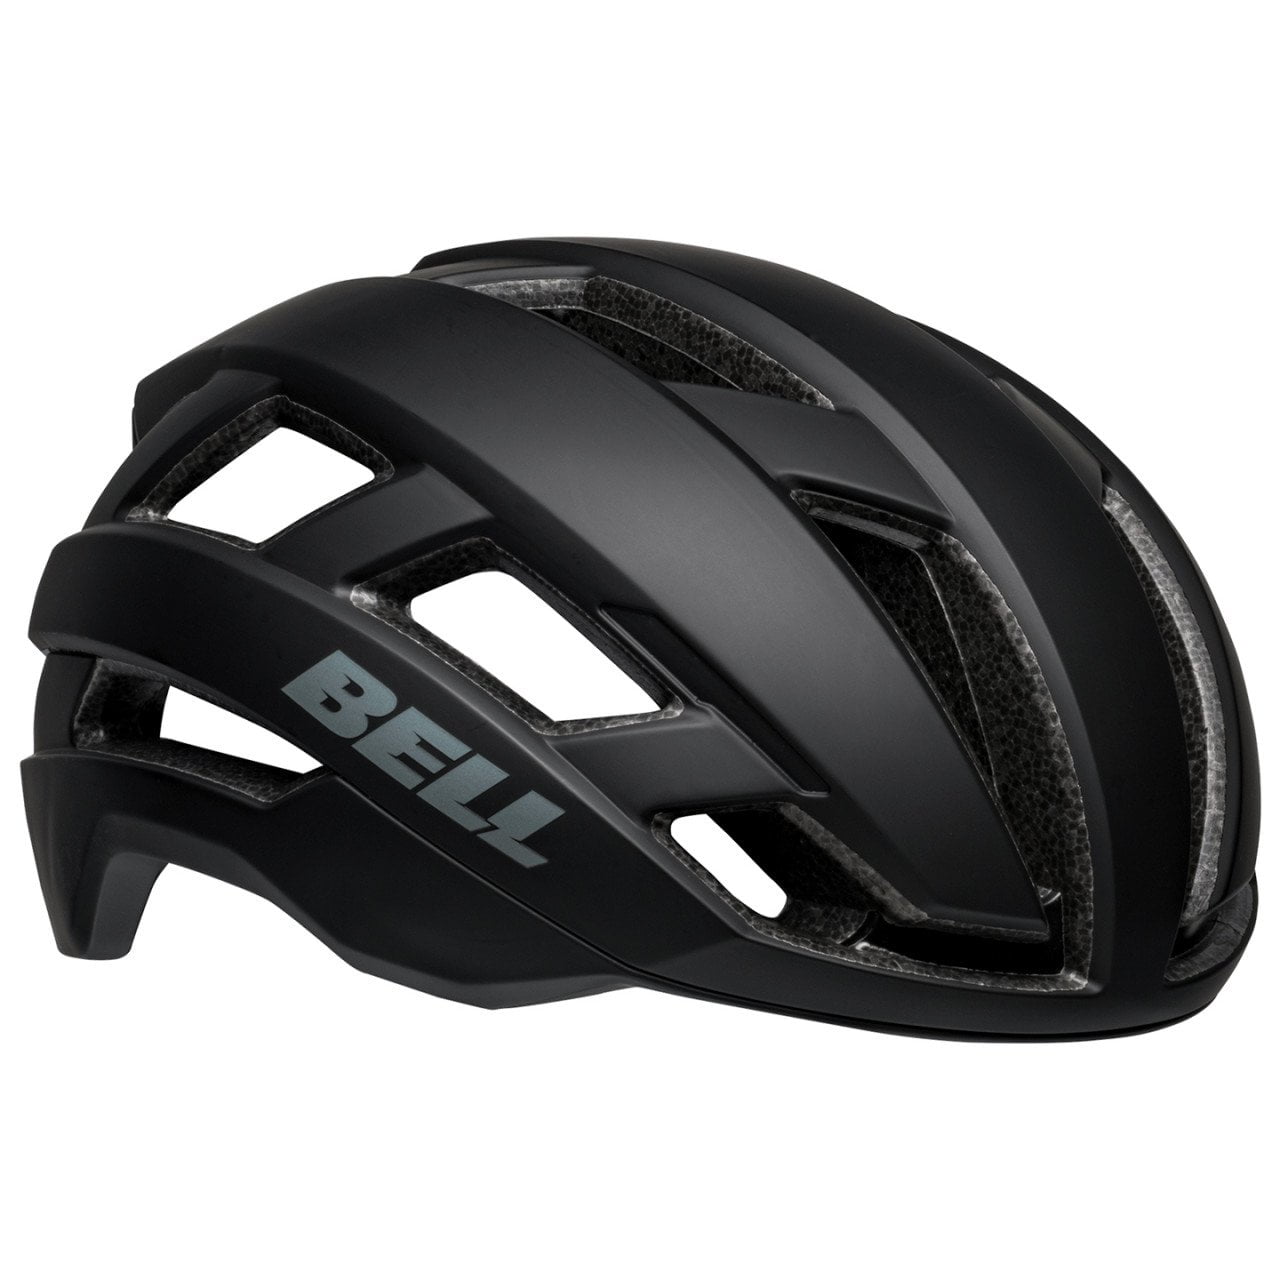 Falcon XR LED Mips Road Bike Helmet